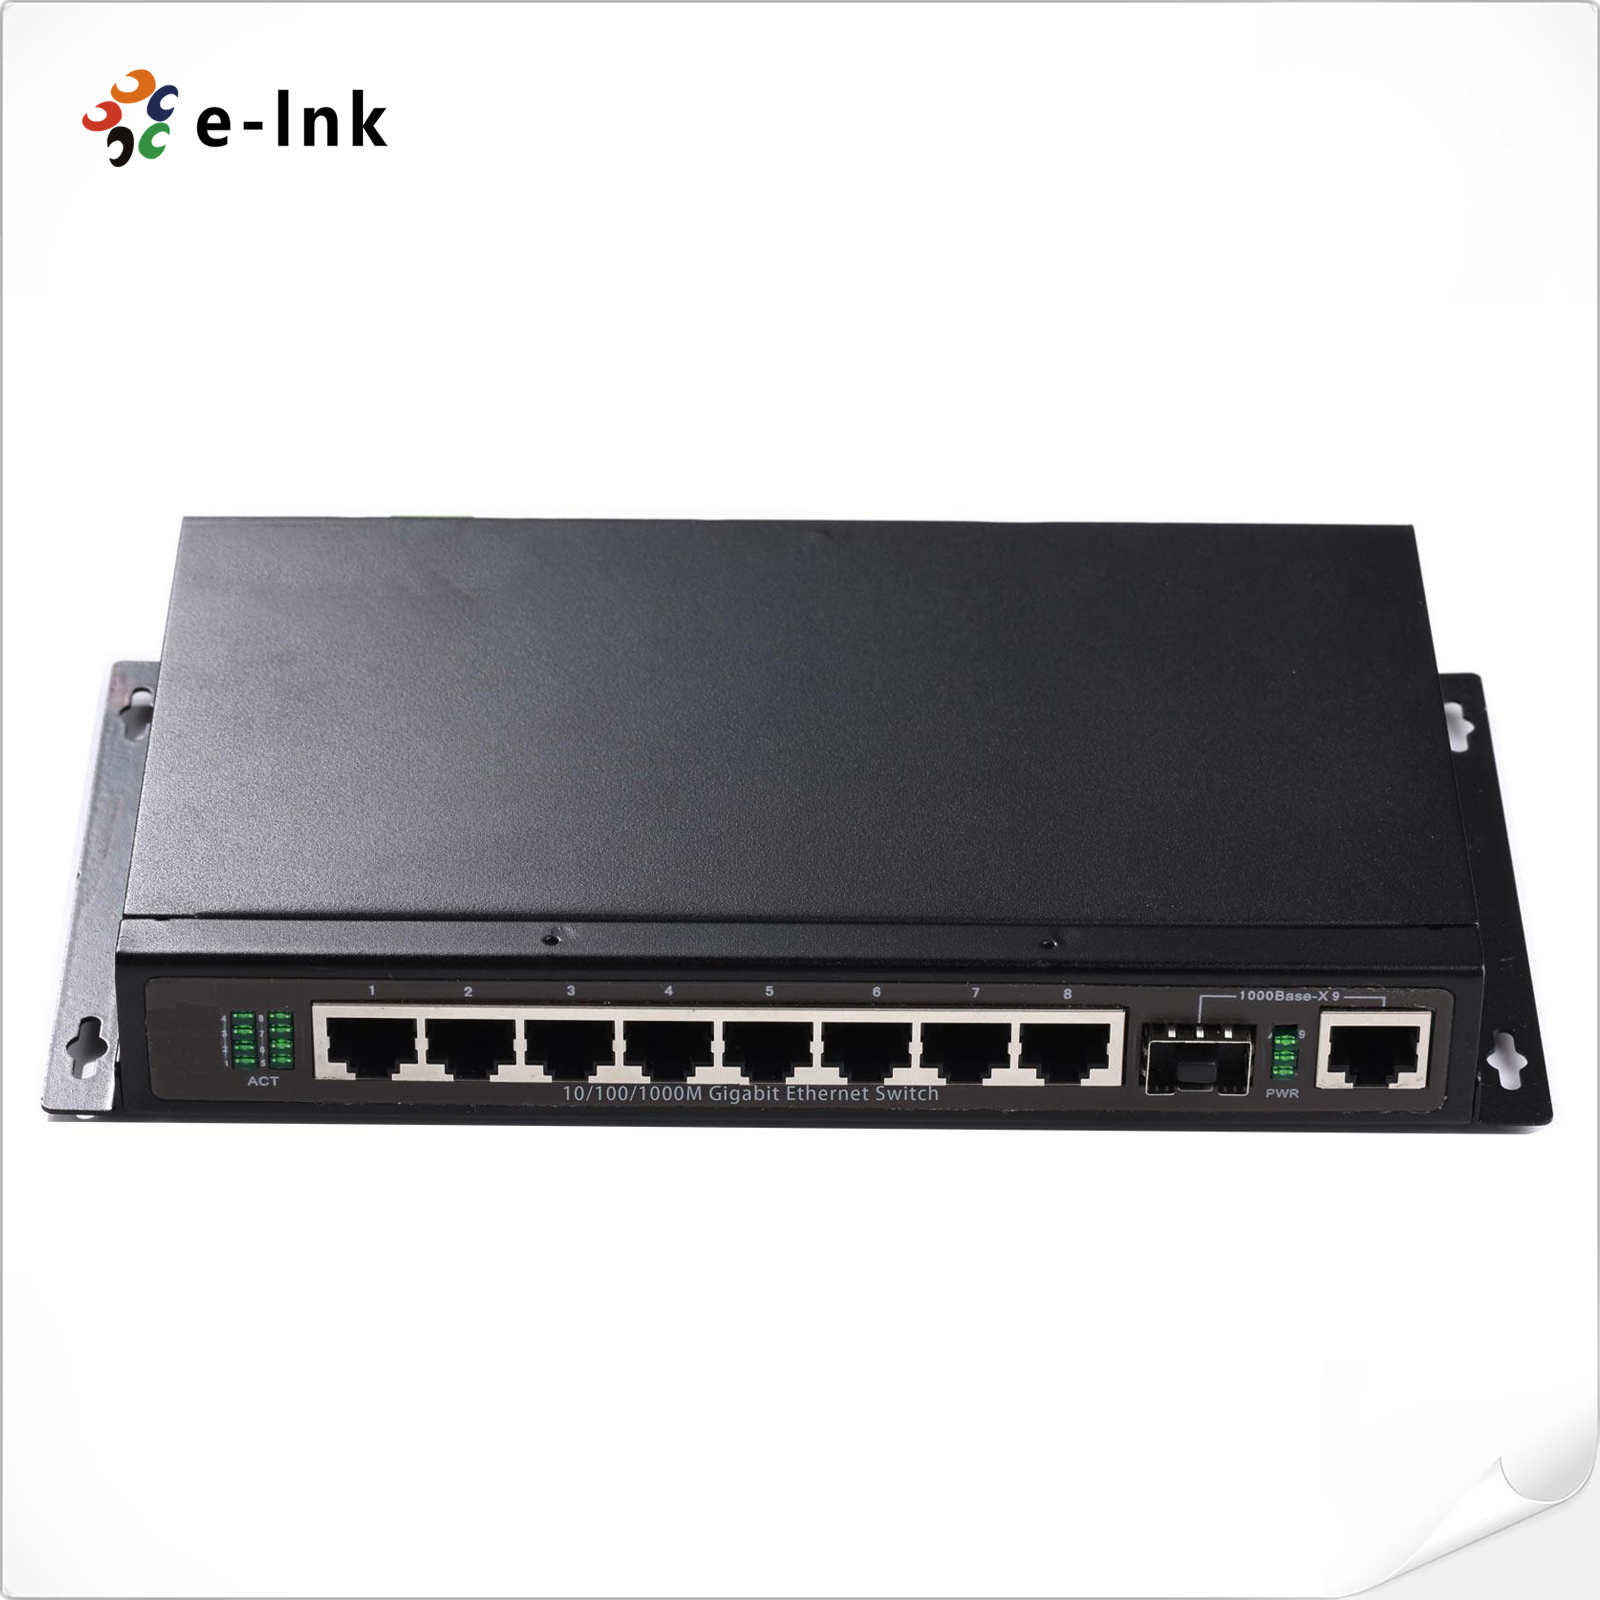 8x10/100/1000M TP ports + 1x1000M SFP port / TP port (Combo) uplink Managed Ethernet Switch